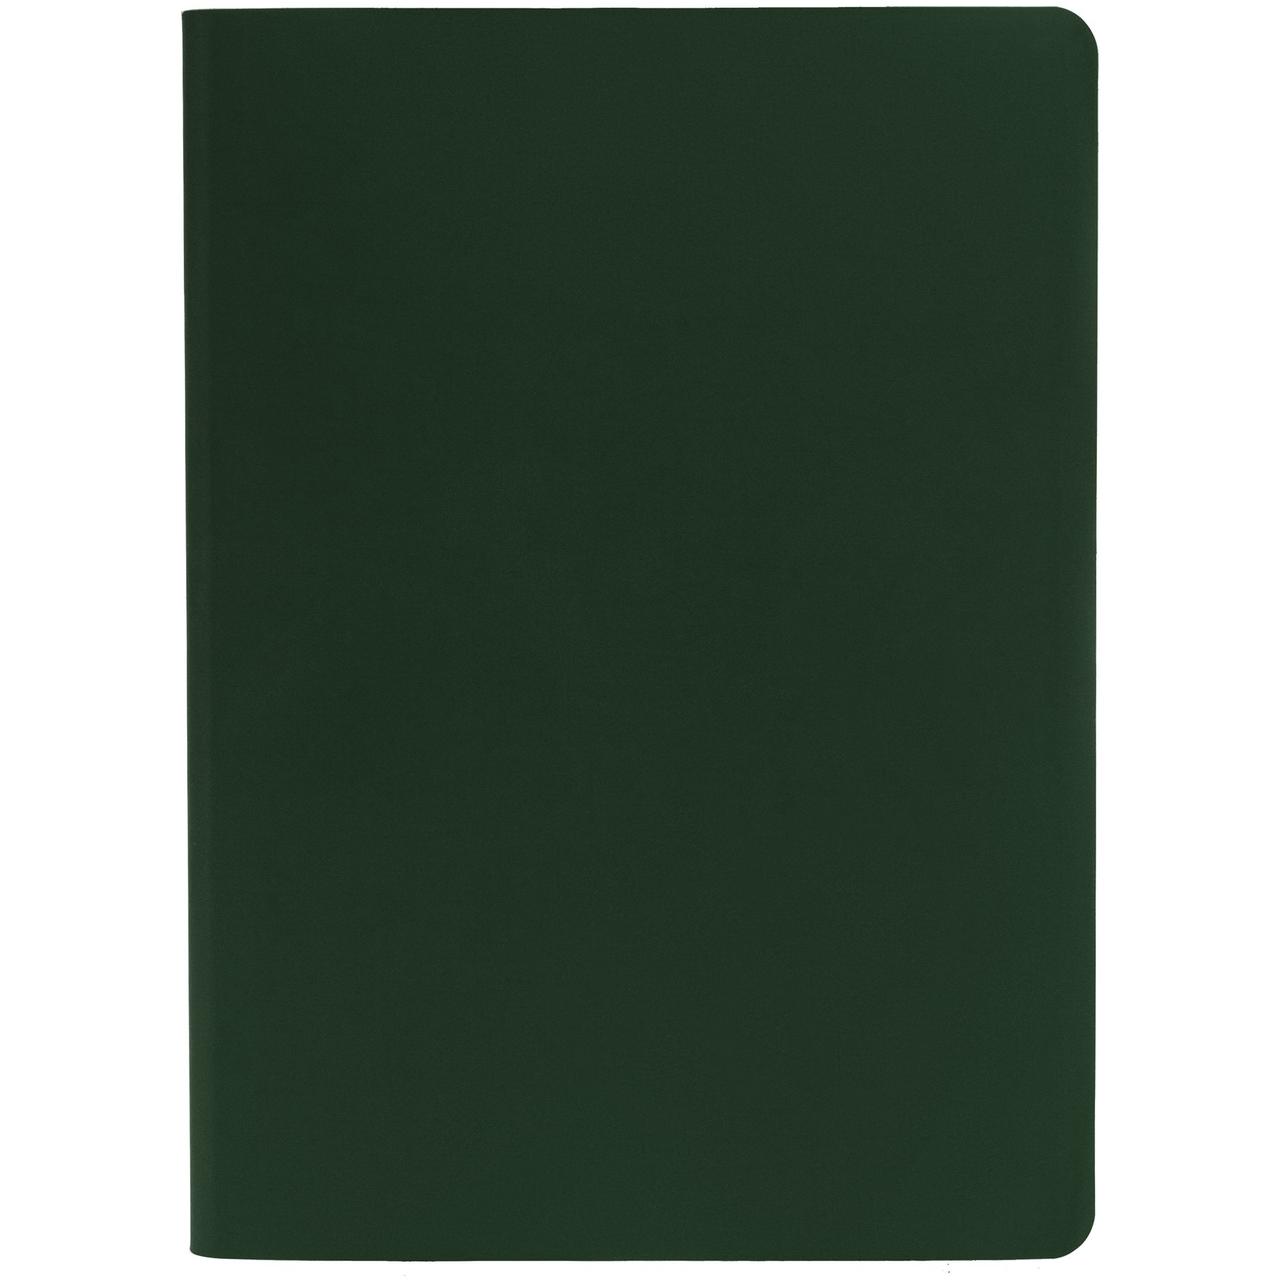 Ежедневник Flex Shall датированный, зеленый (артикул 17881.99)